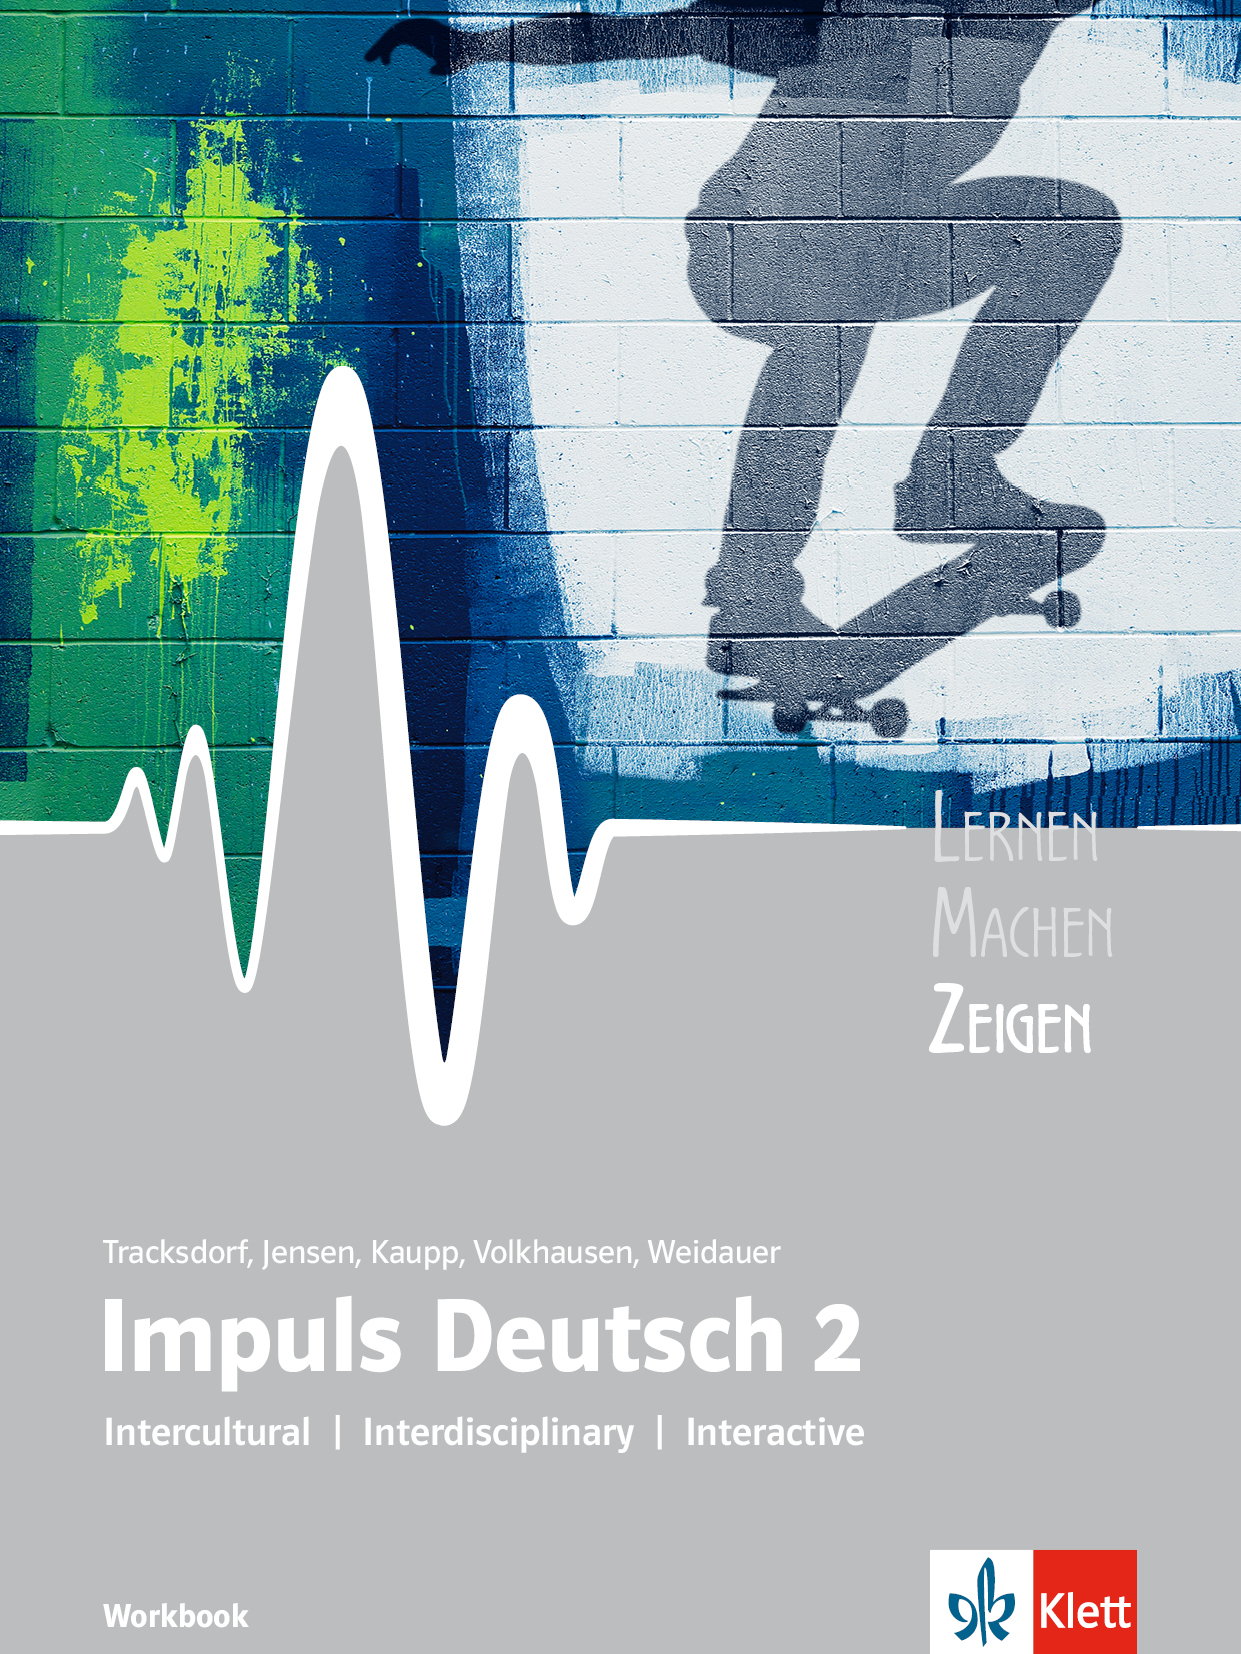 ID 2 ZEIGEN Workbook (Impuls series)